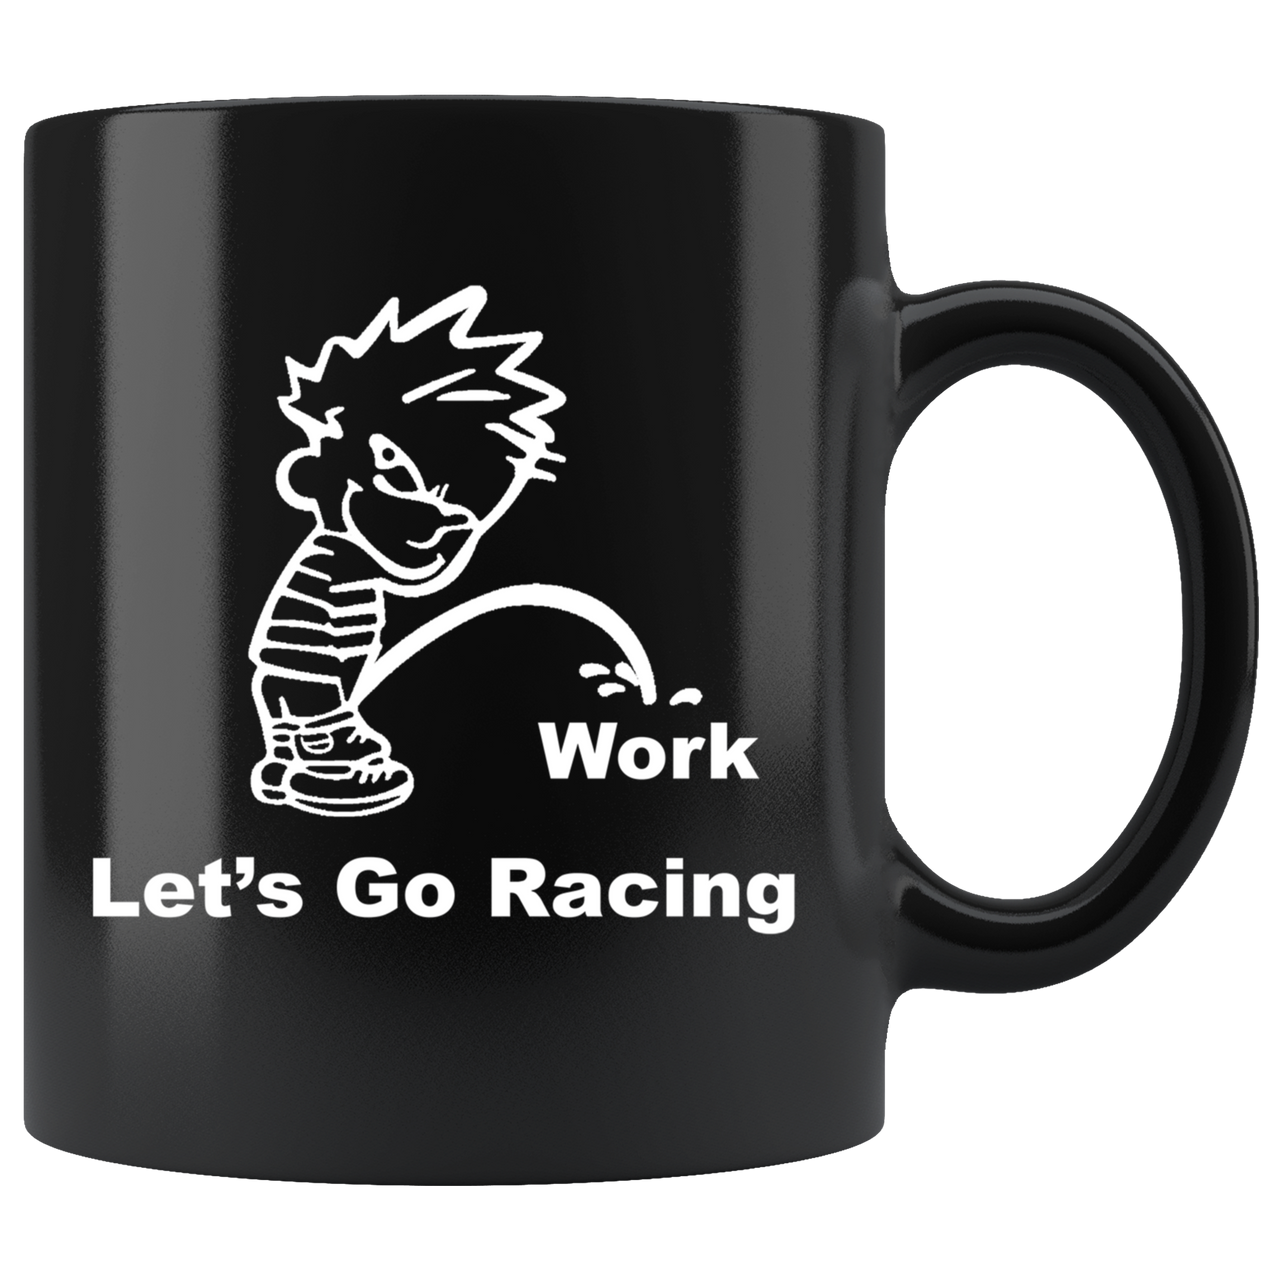 Let's Go Racing Mug!